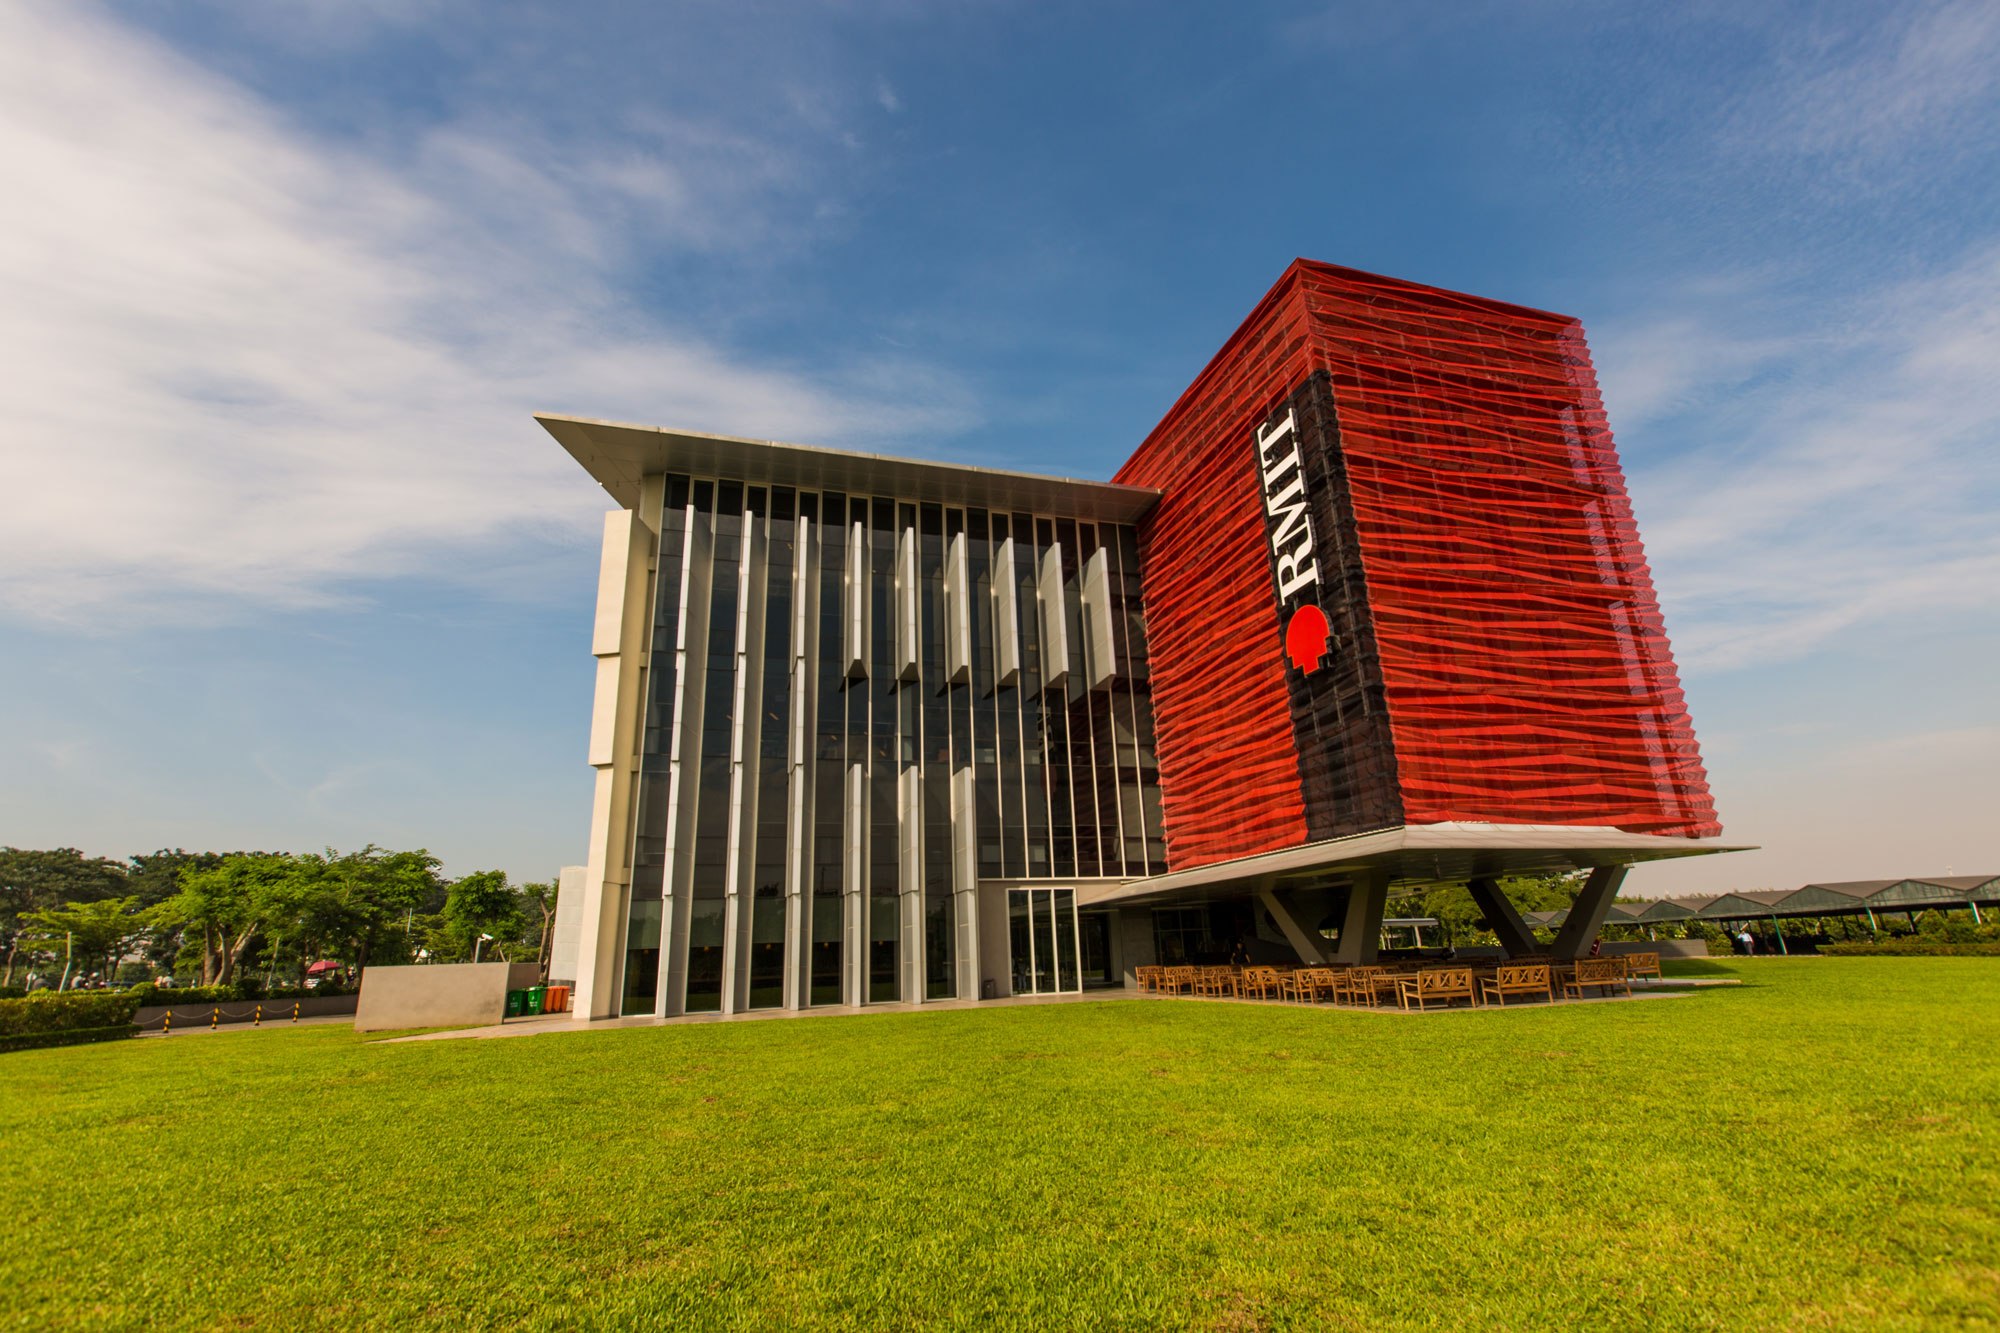 Tòa nhà giảng đường 2 đáp ứng tiêu chuẩn năm sao “Công trình xanh” của Úc.